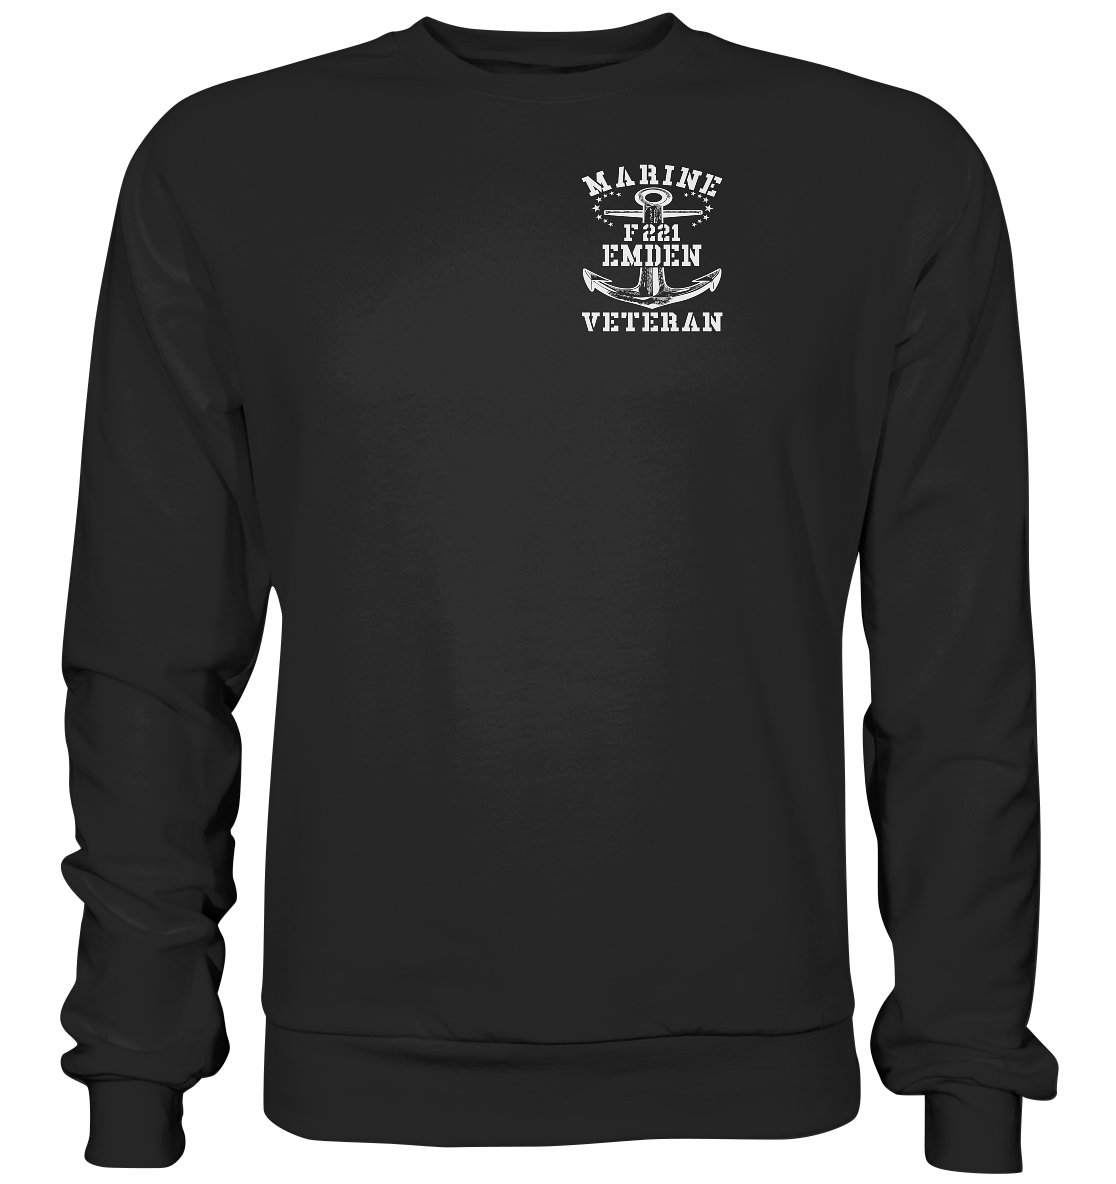 Fregatte F221 EMDEN Marine Veteran Brustlogo - Premium Sweatshirt